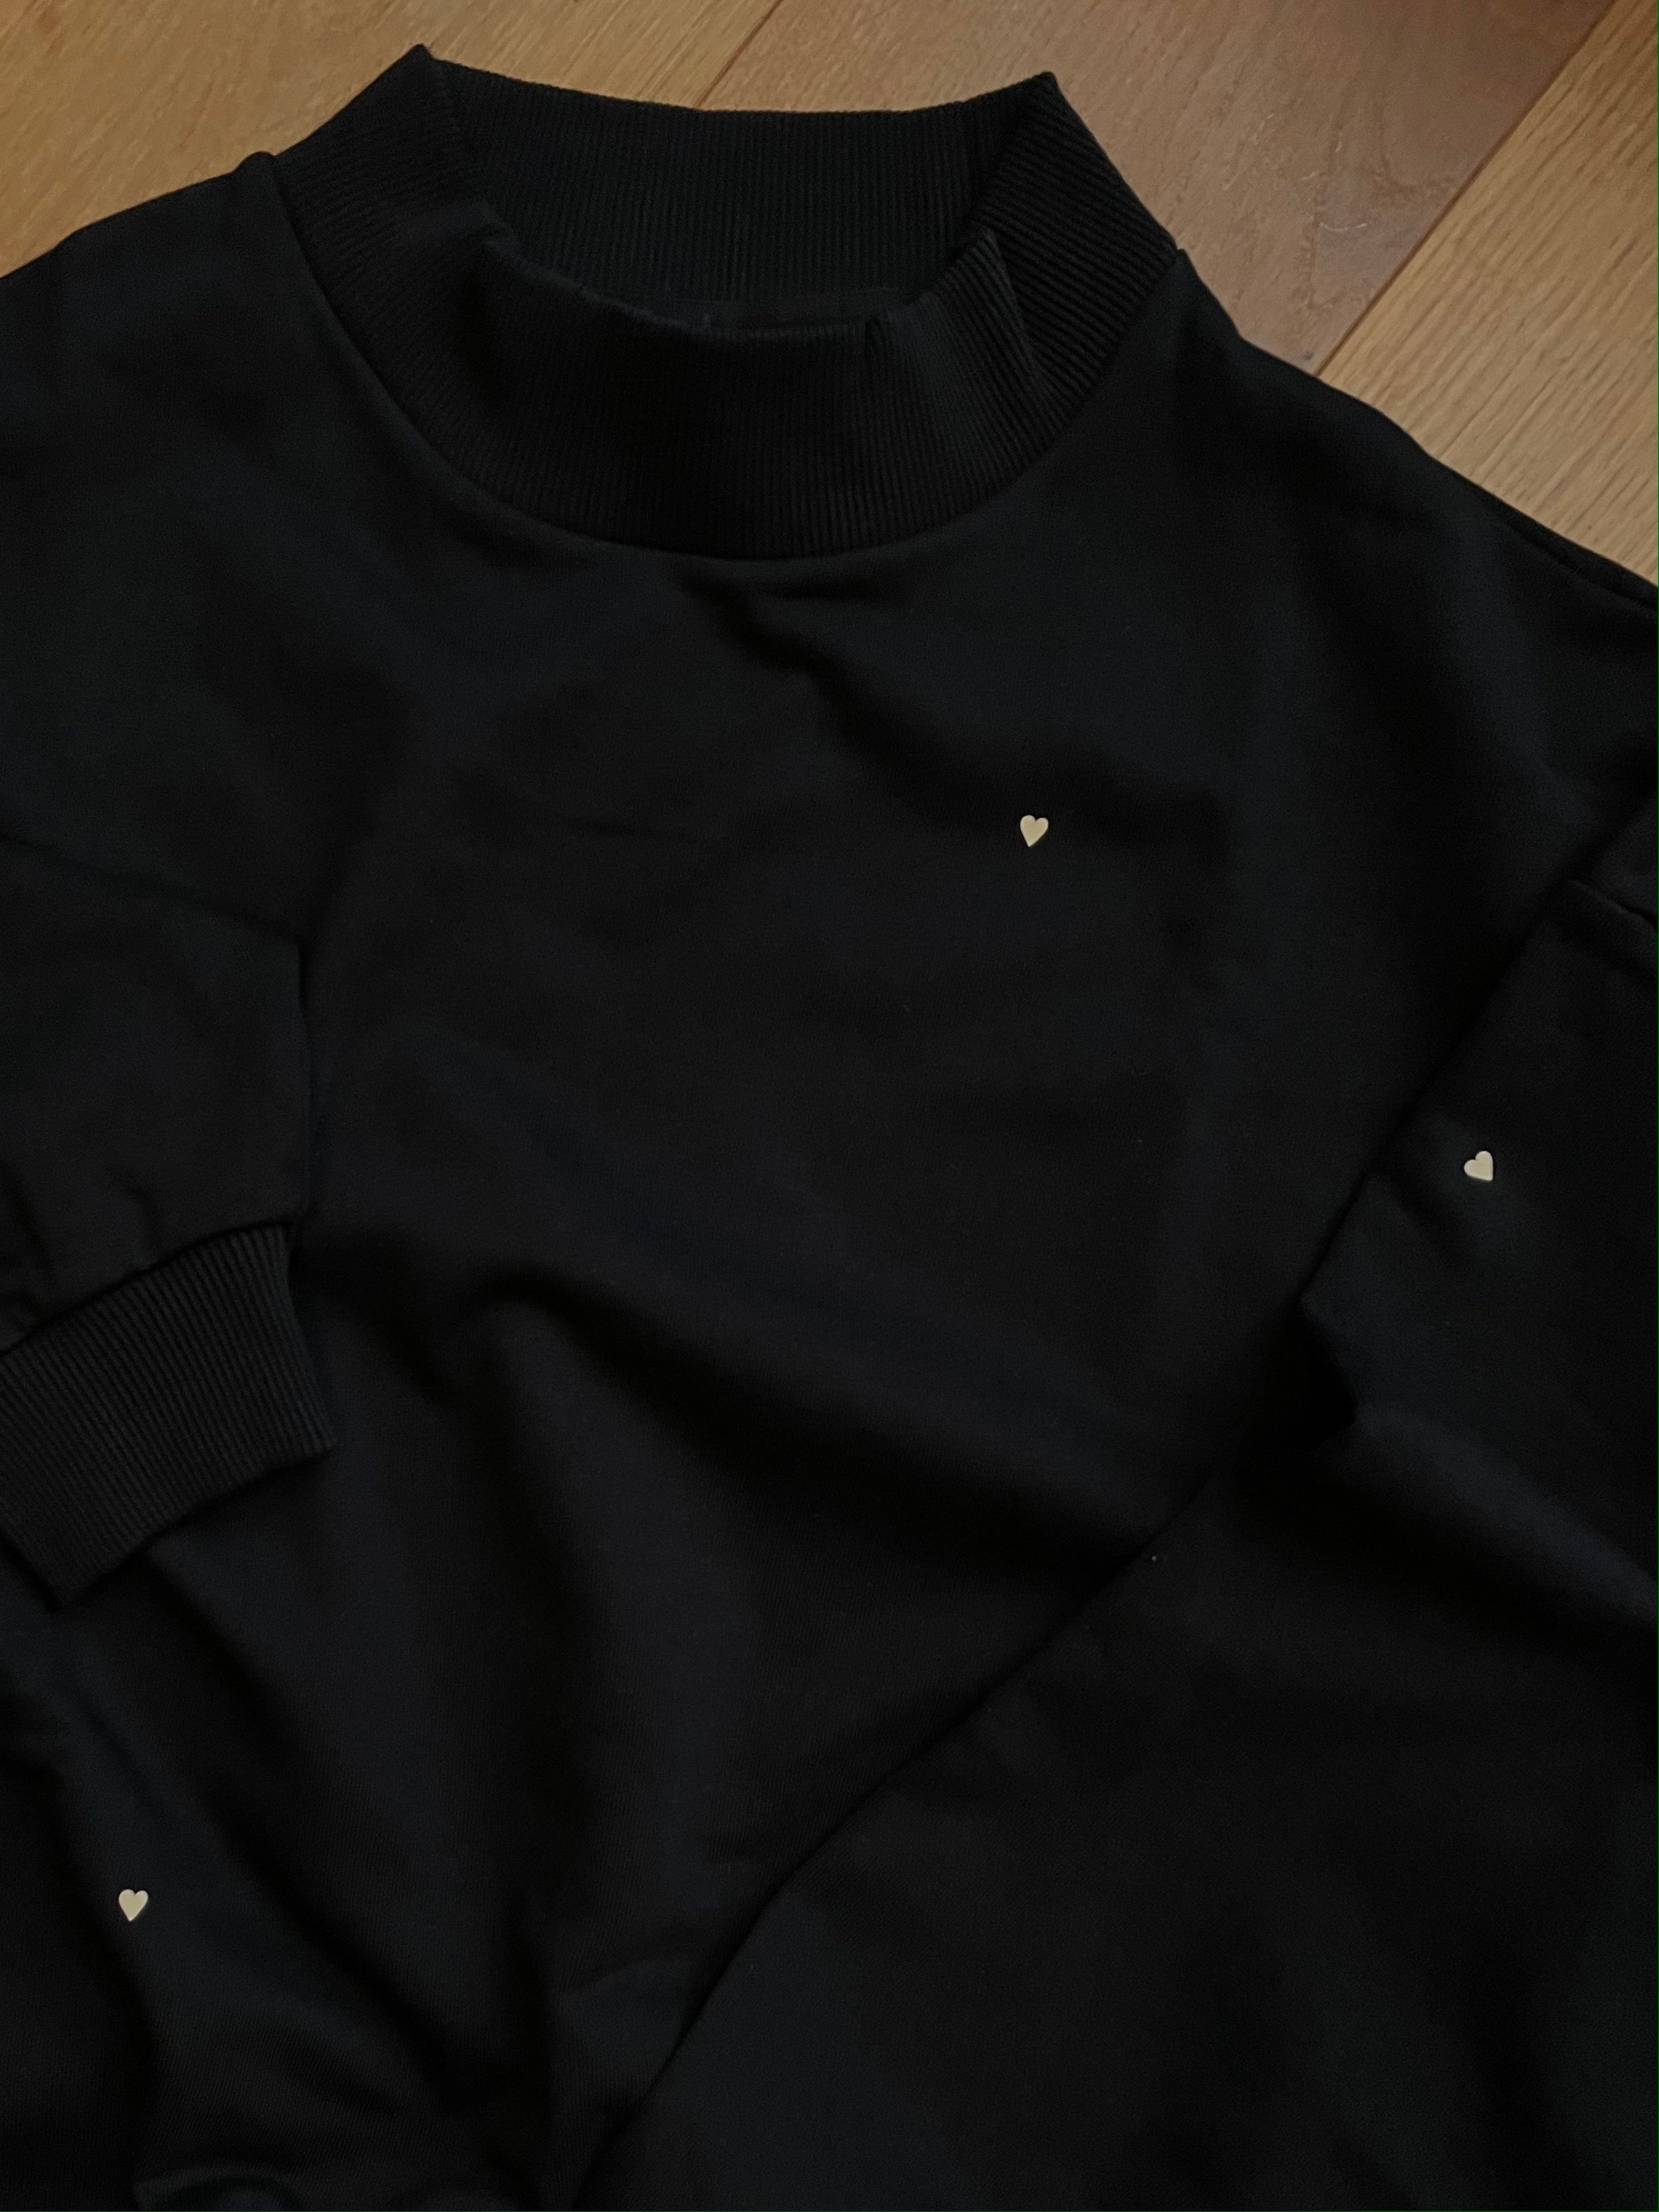 NEW oversized Sweatshirt black mit Herzchen